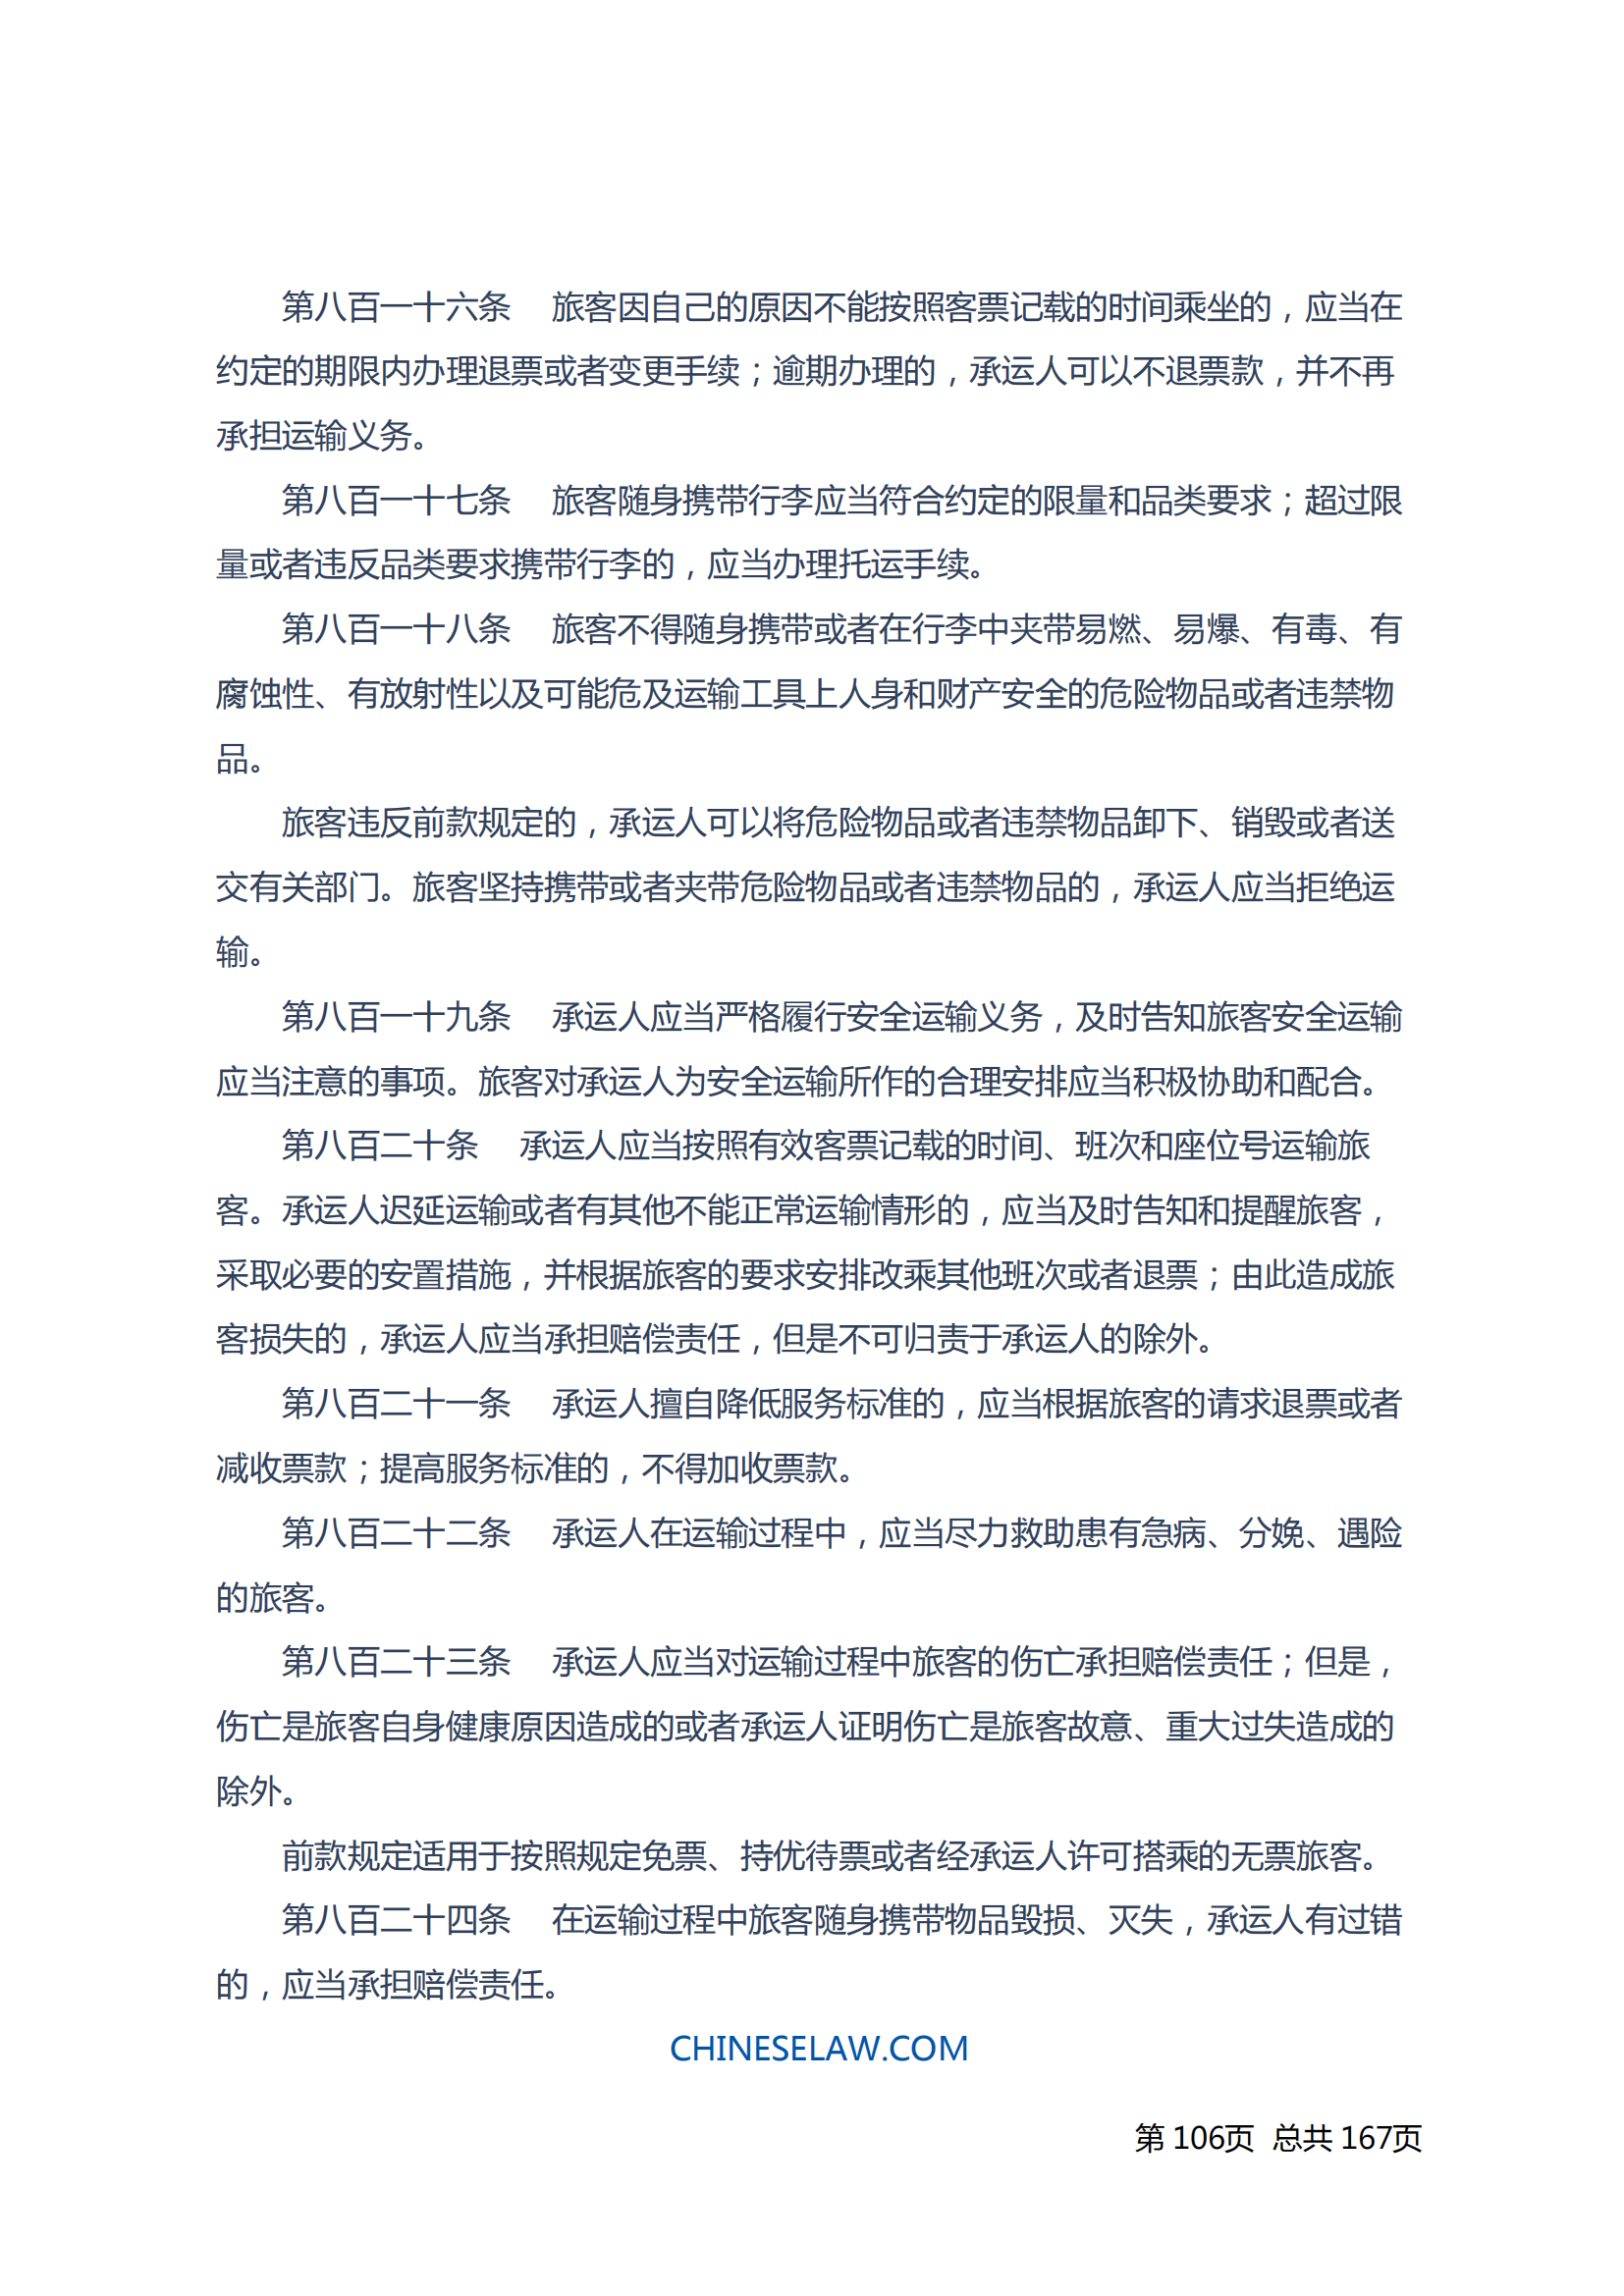 中华人民共和国民法典_105